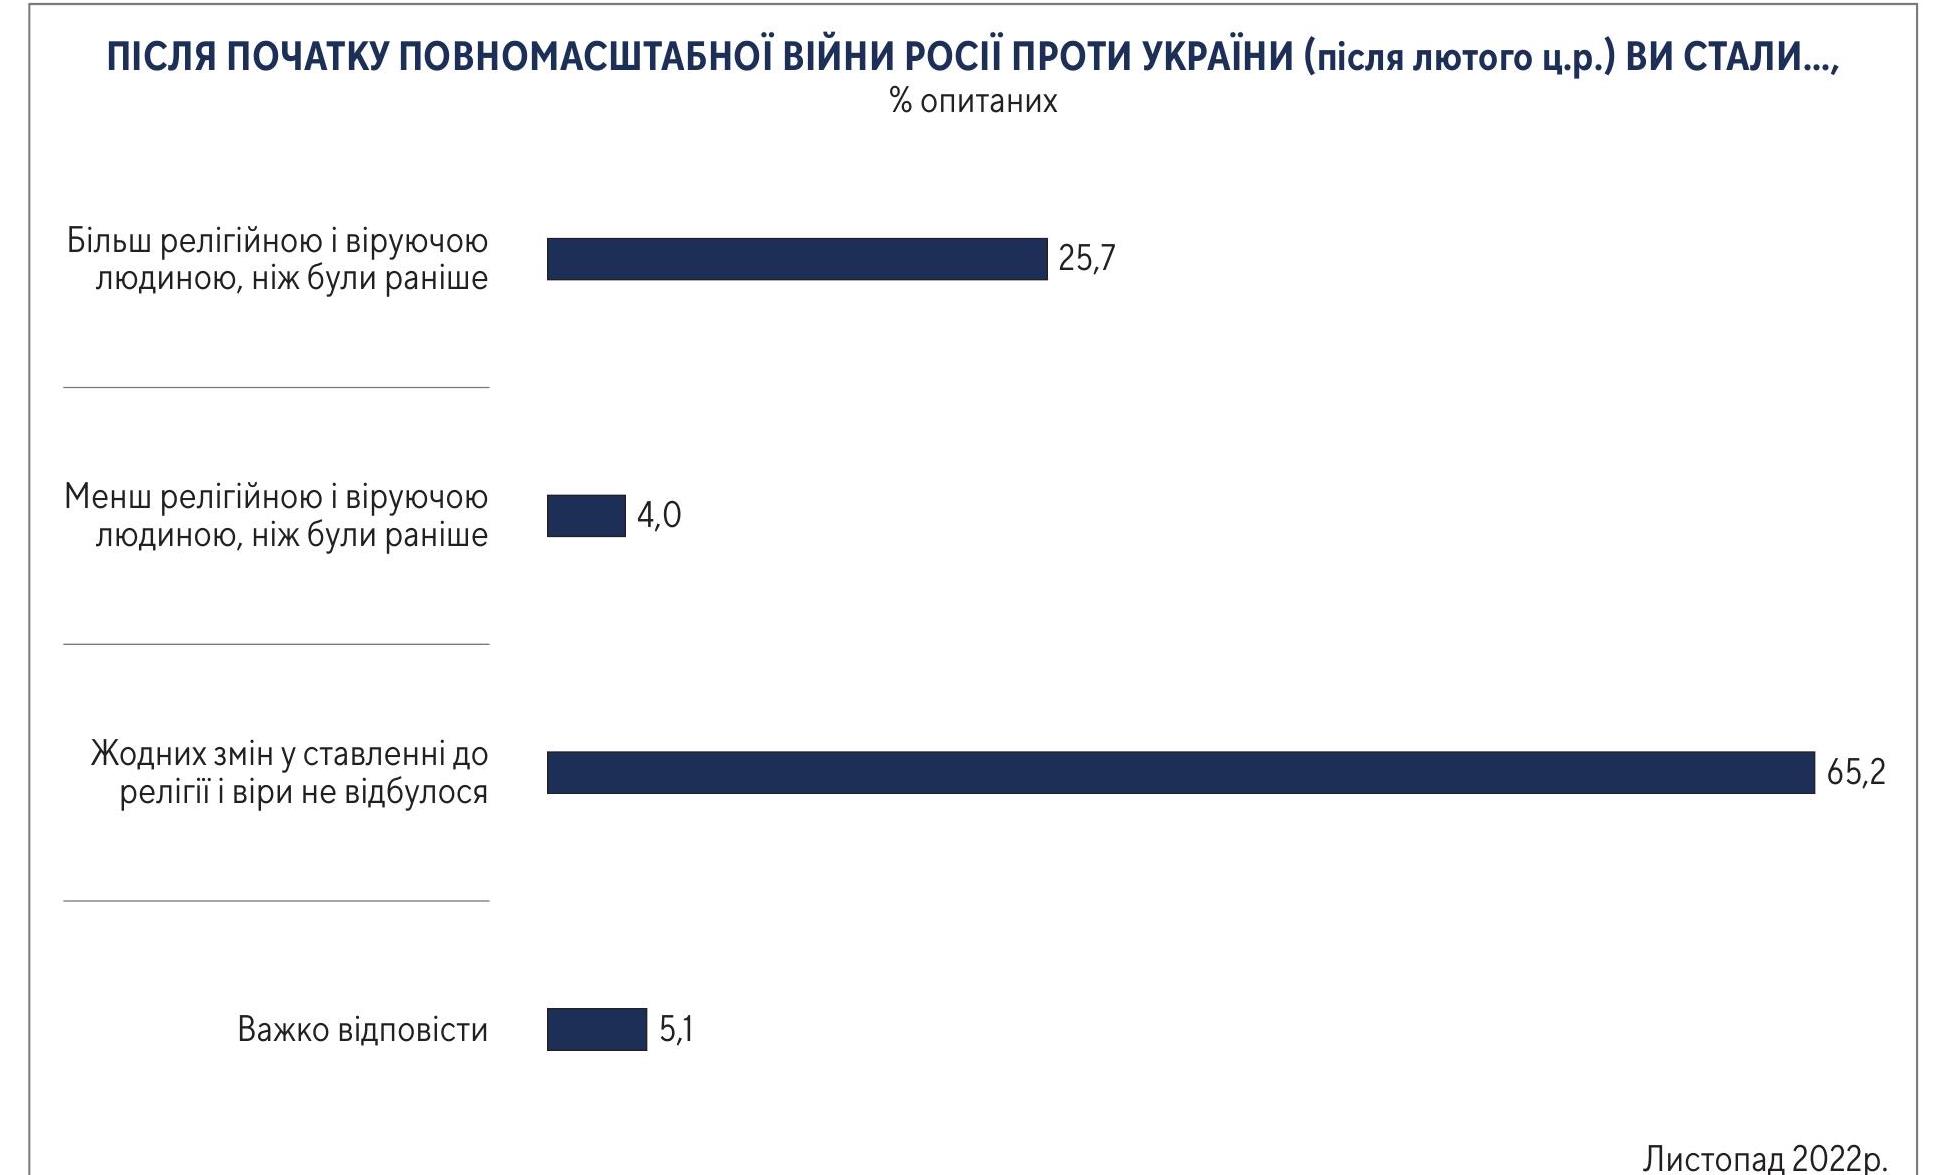 Як війна вплинула на релігійність українців: дані опитування